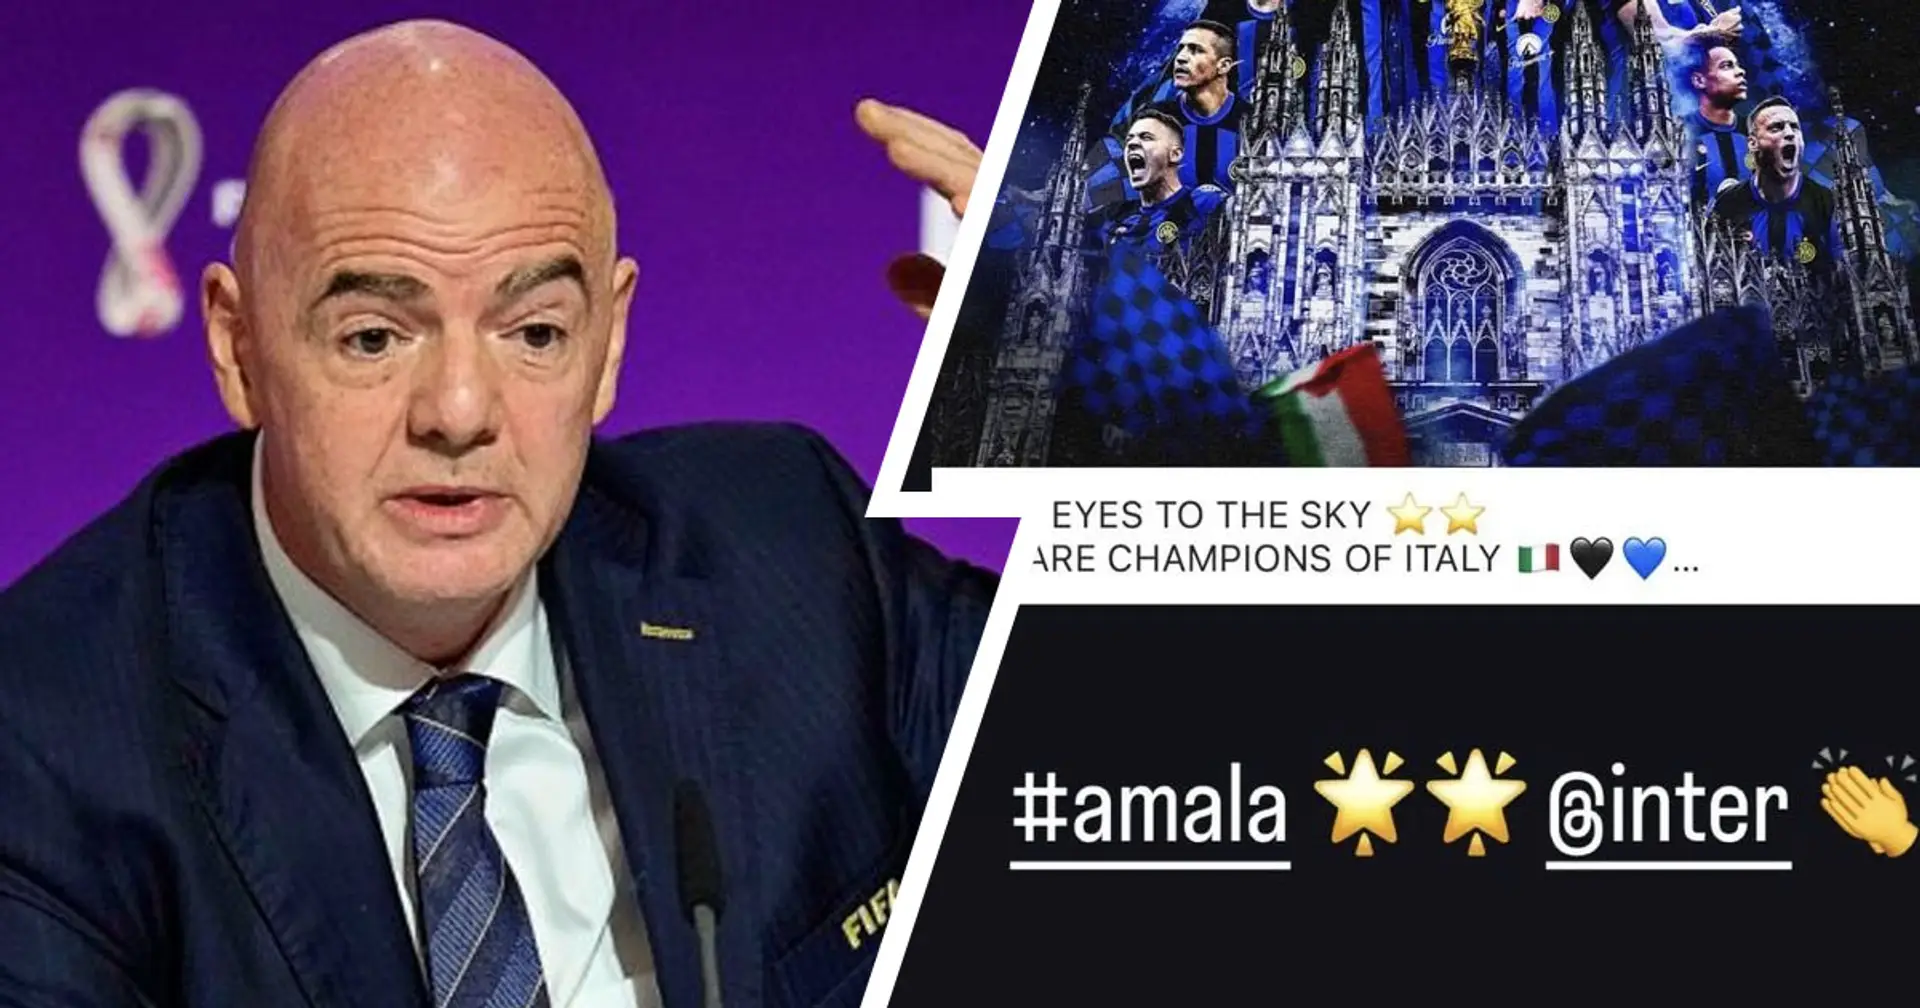 L'esultanza del presidente della FIFA dopo la vittoria del 20esimo Scudetto: "Amala" - FOTO